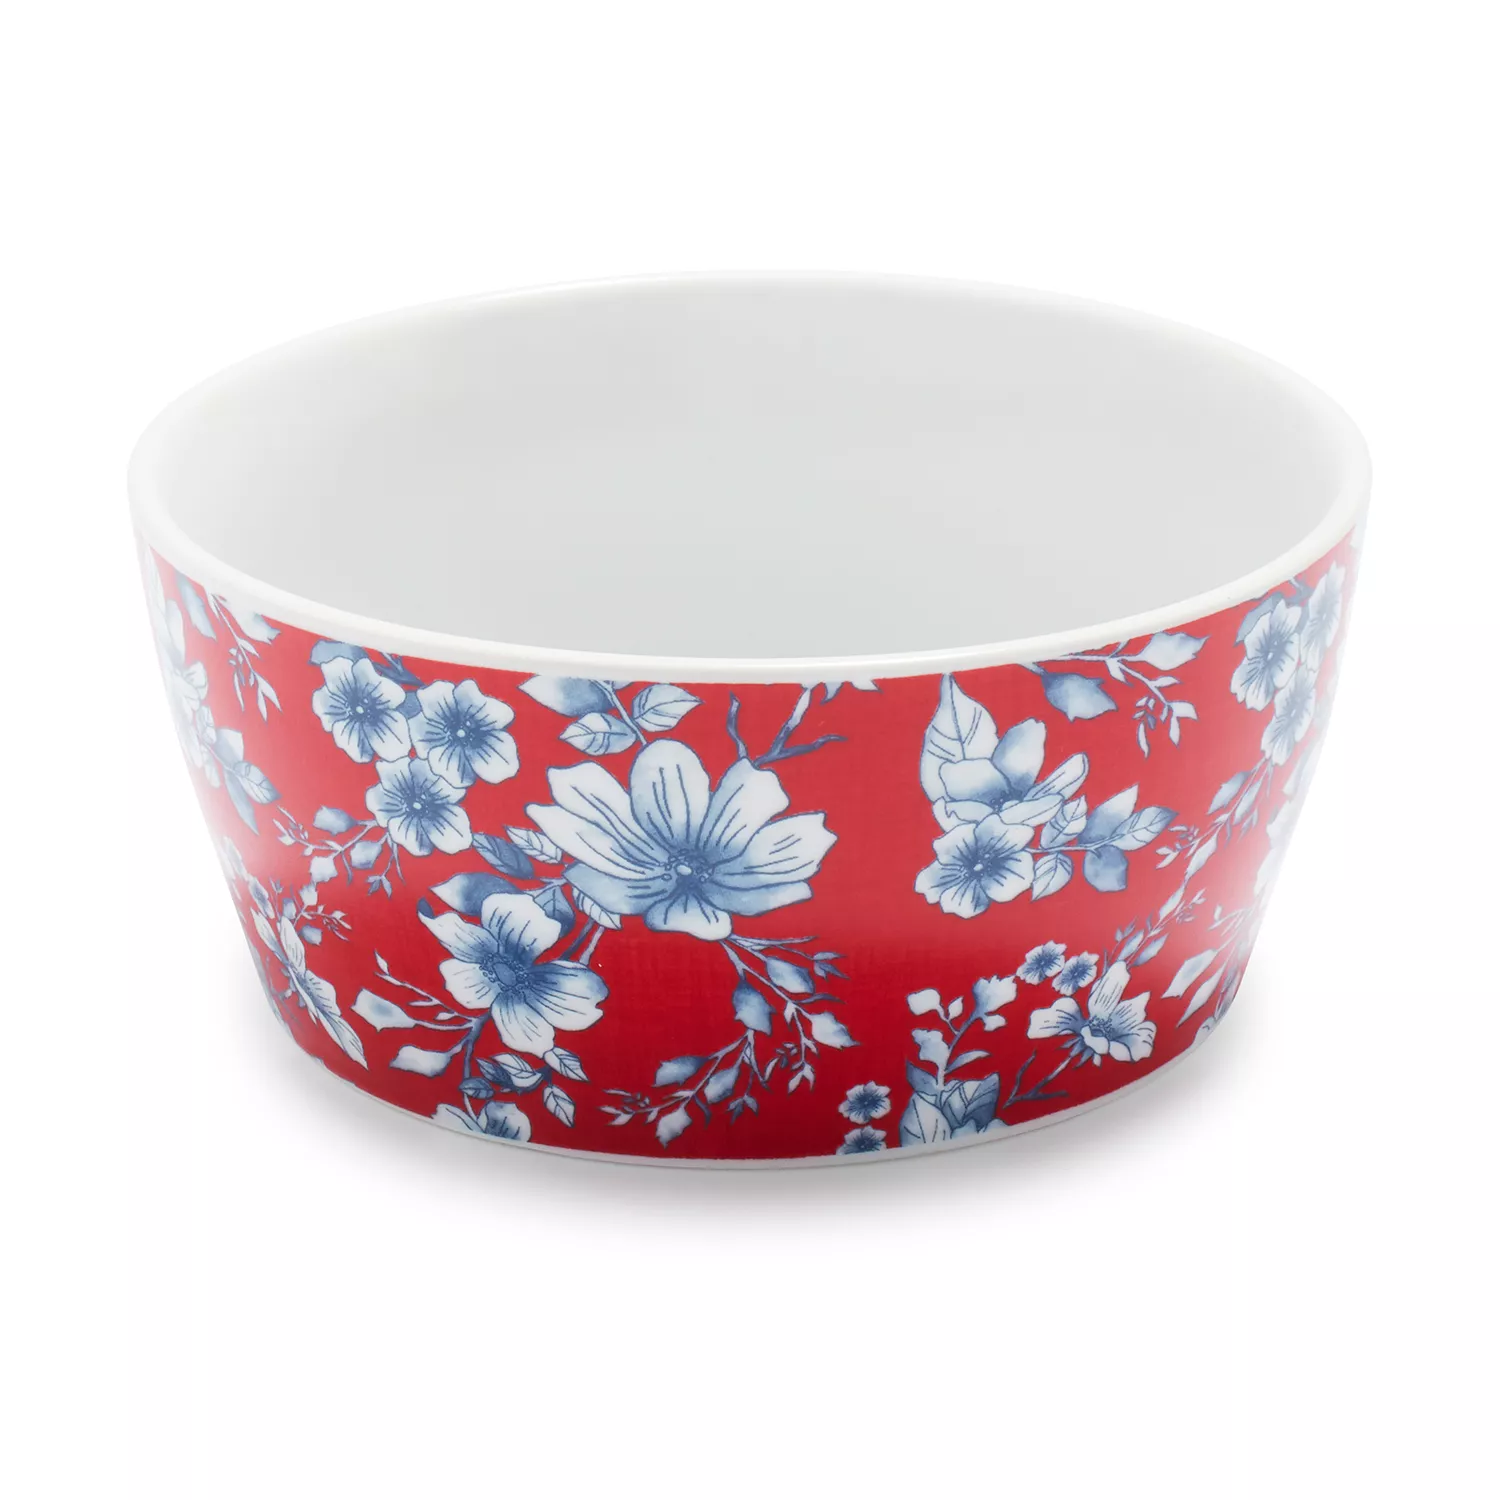 Sur La Table Pique-nique Floral Porcelain Bowls, Set of 4